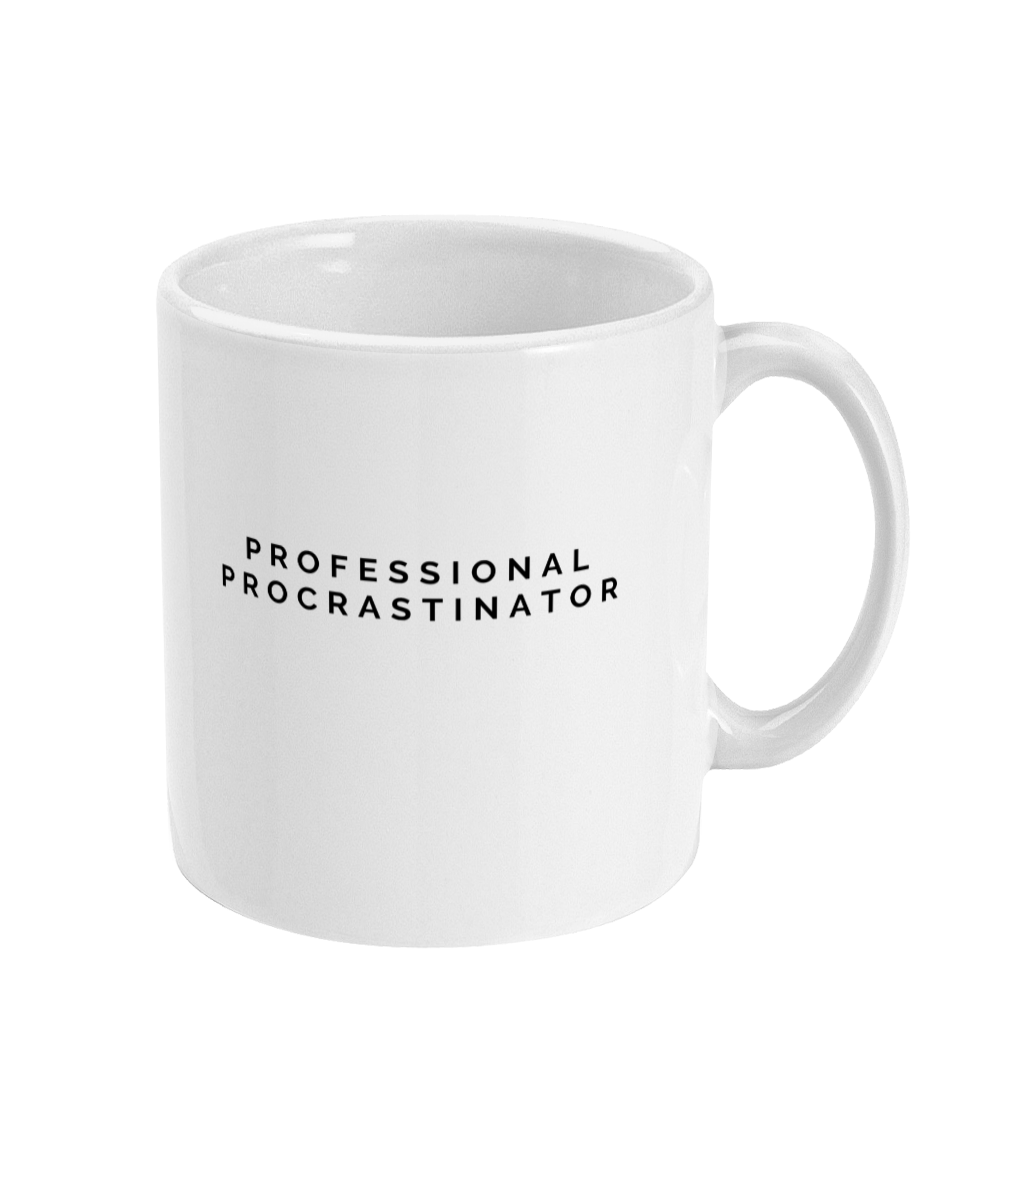 Professional Procrastinator Mug